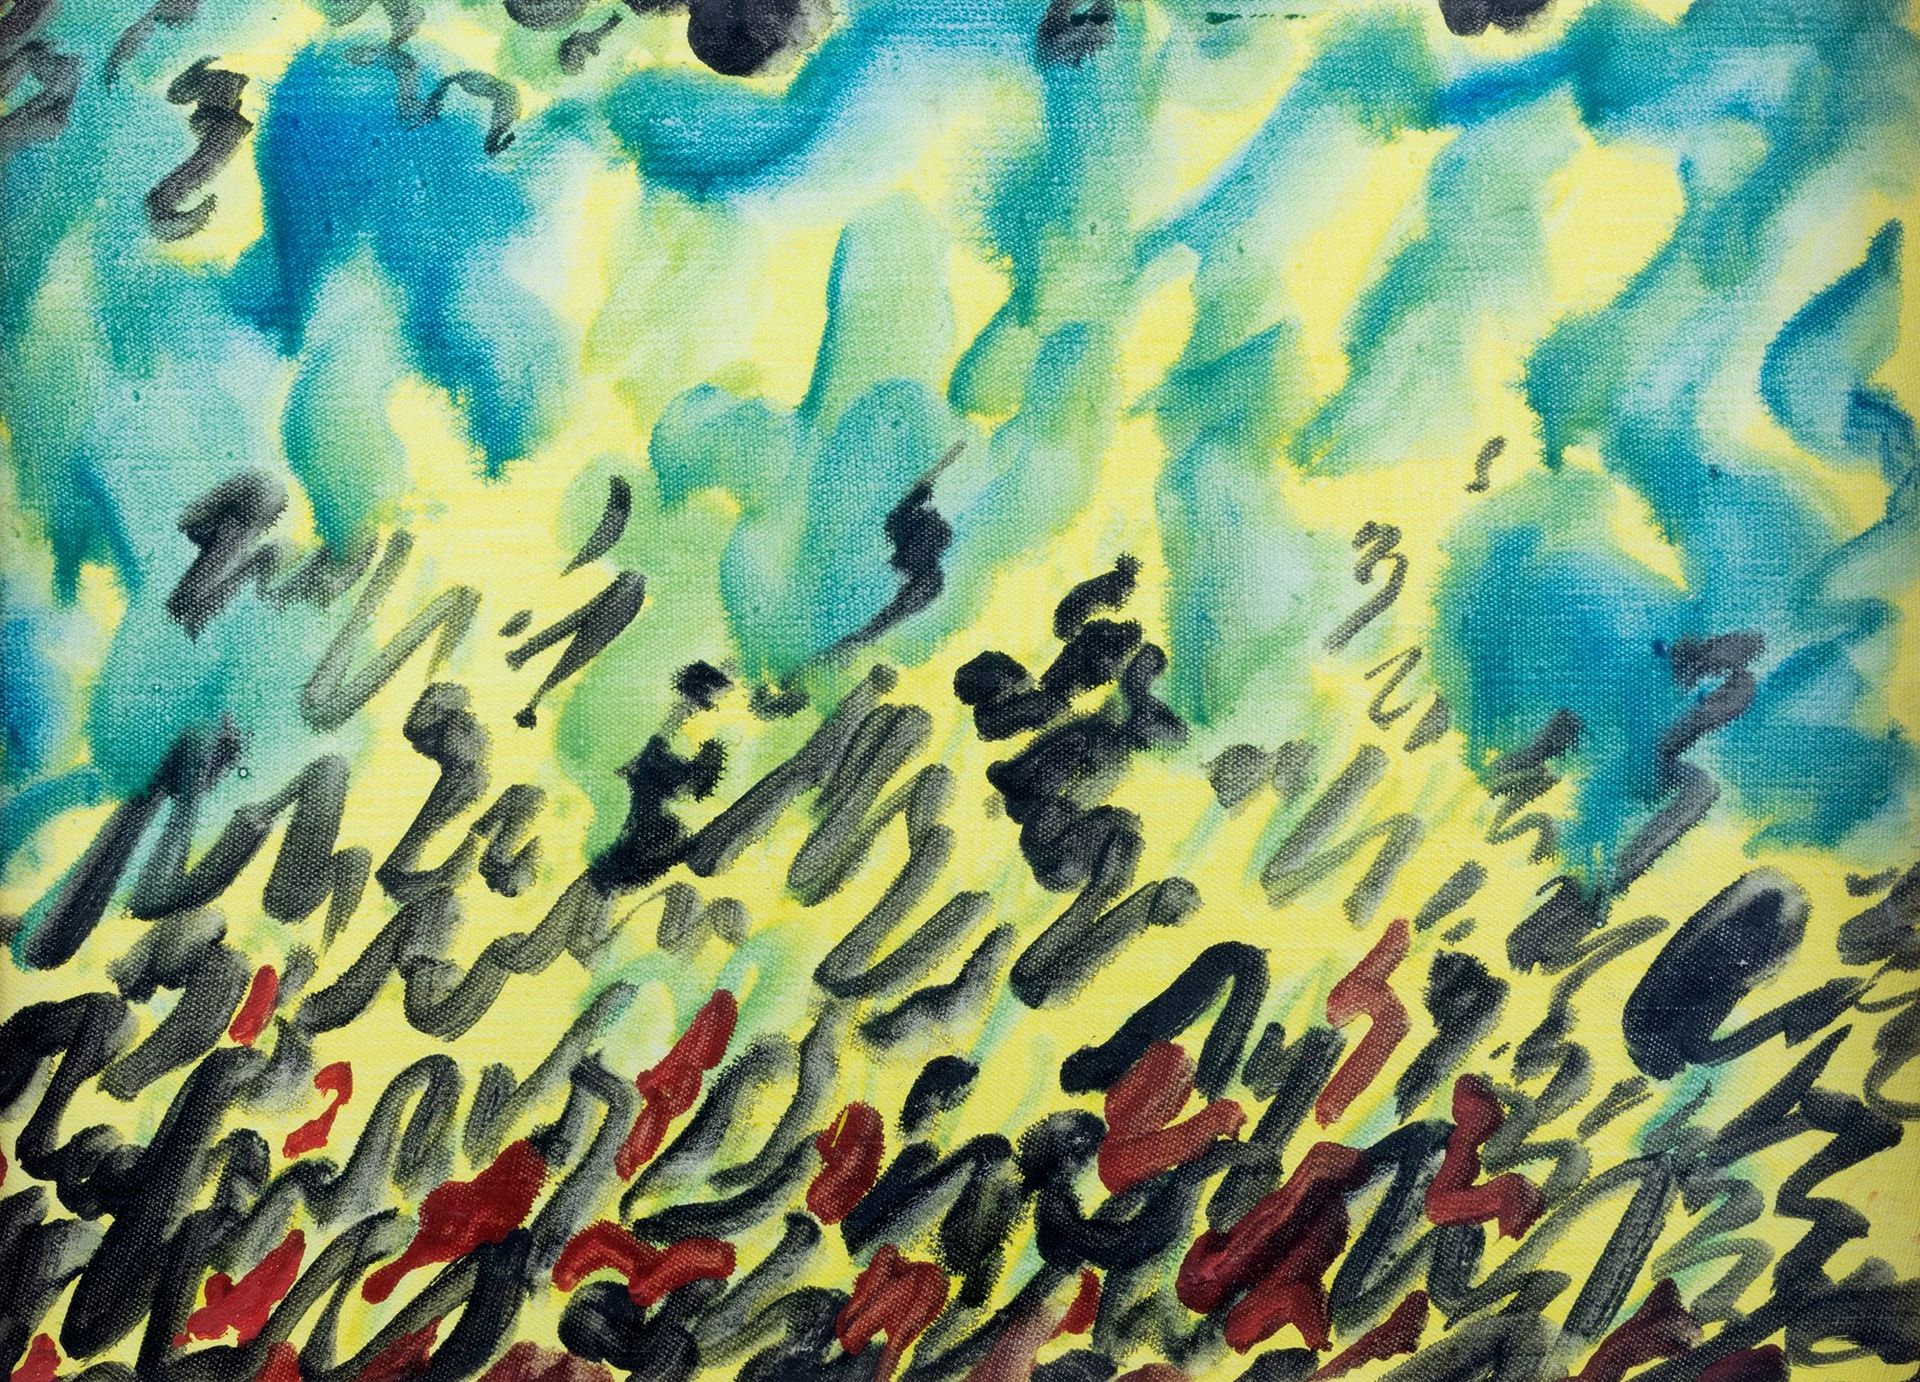 Virgilio Guidi Ohne Titel, 1963

Öl auf Leinwänden
30 x 40 cm
 

Unleserliche Un&hellip;